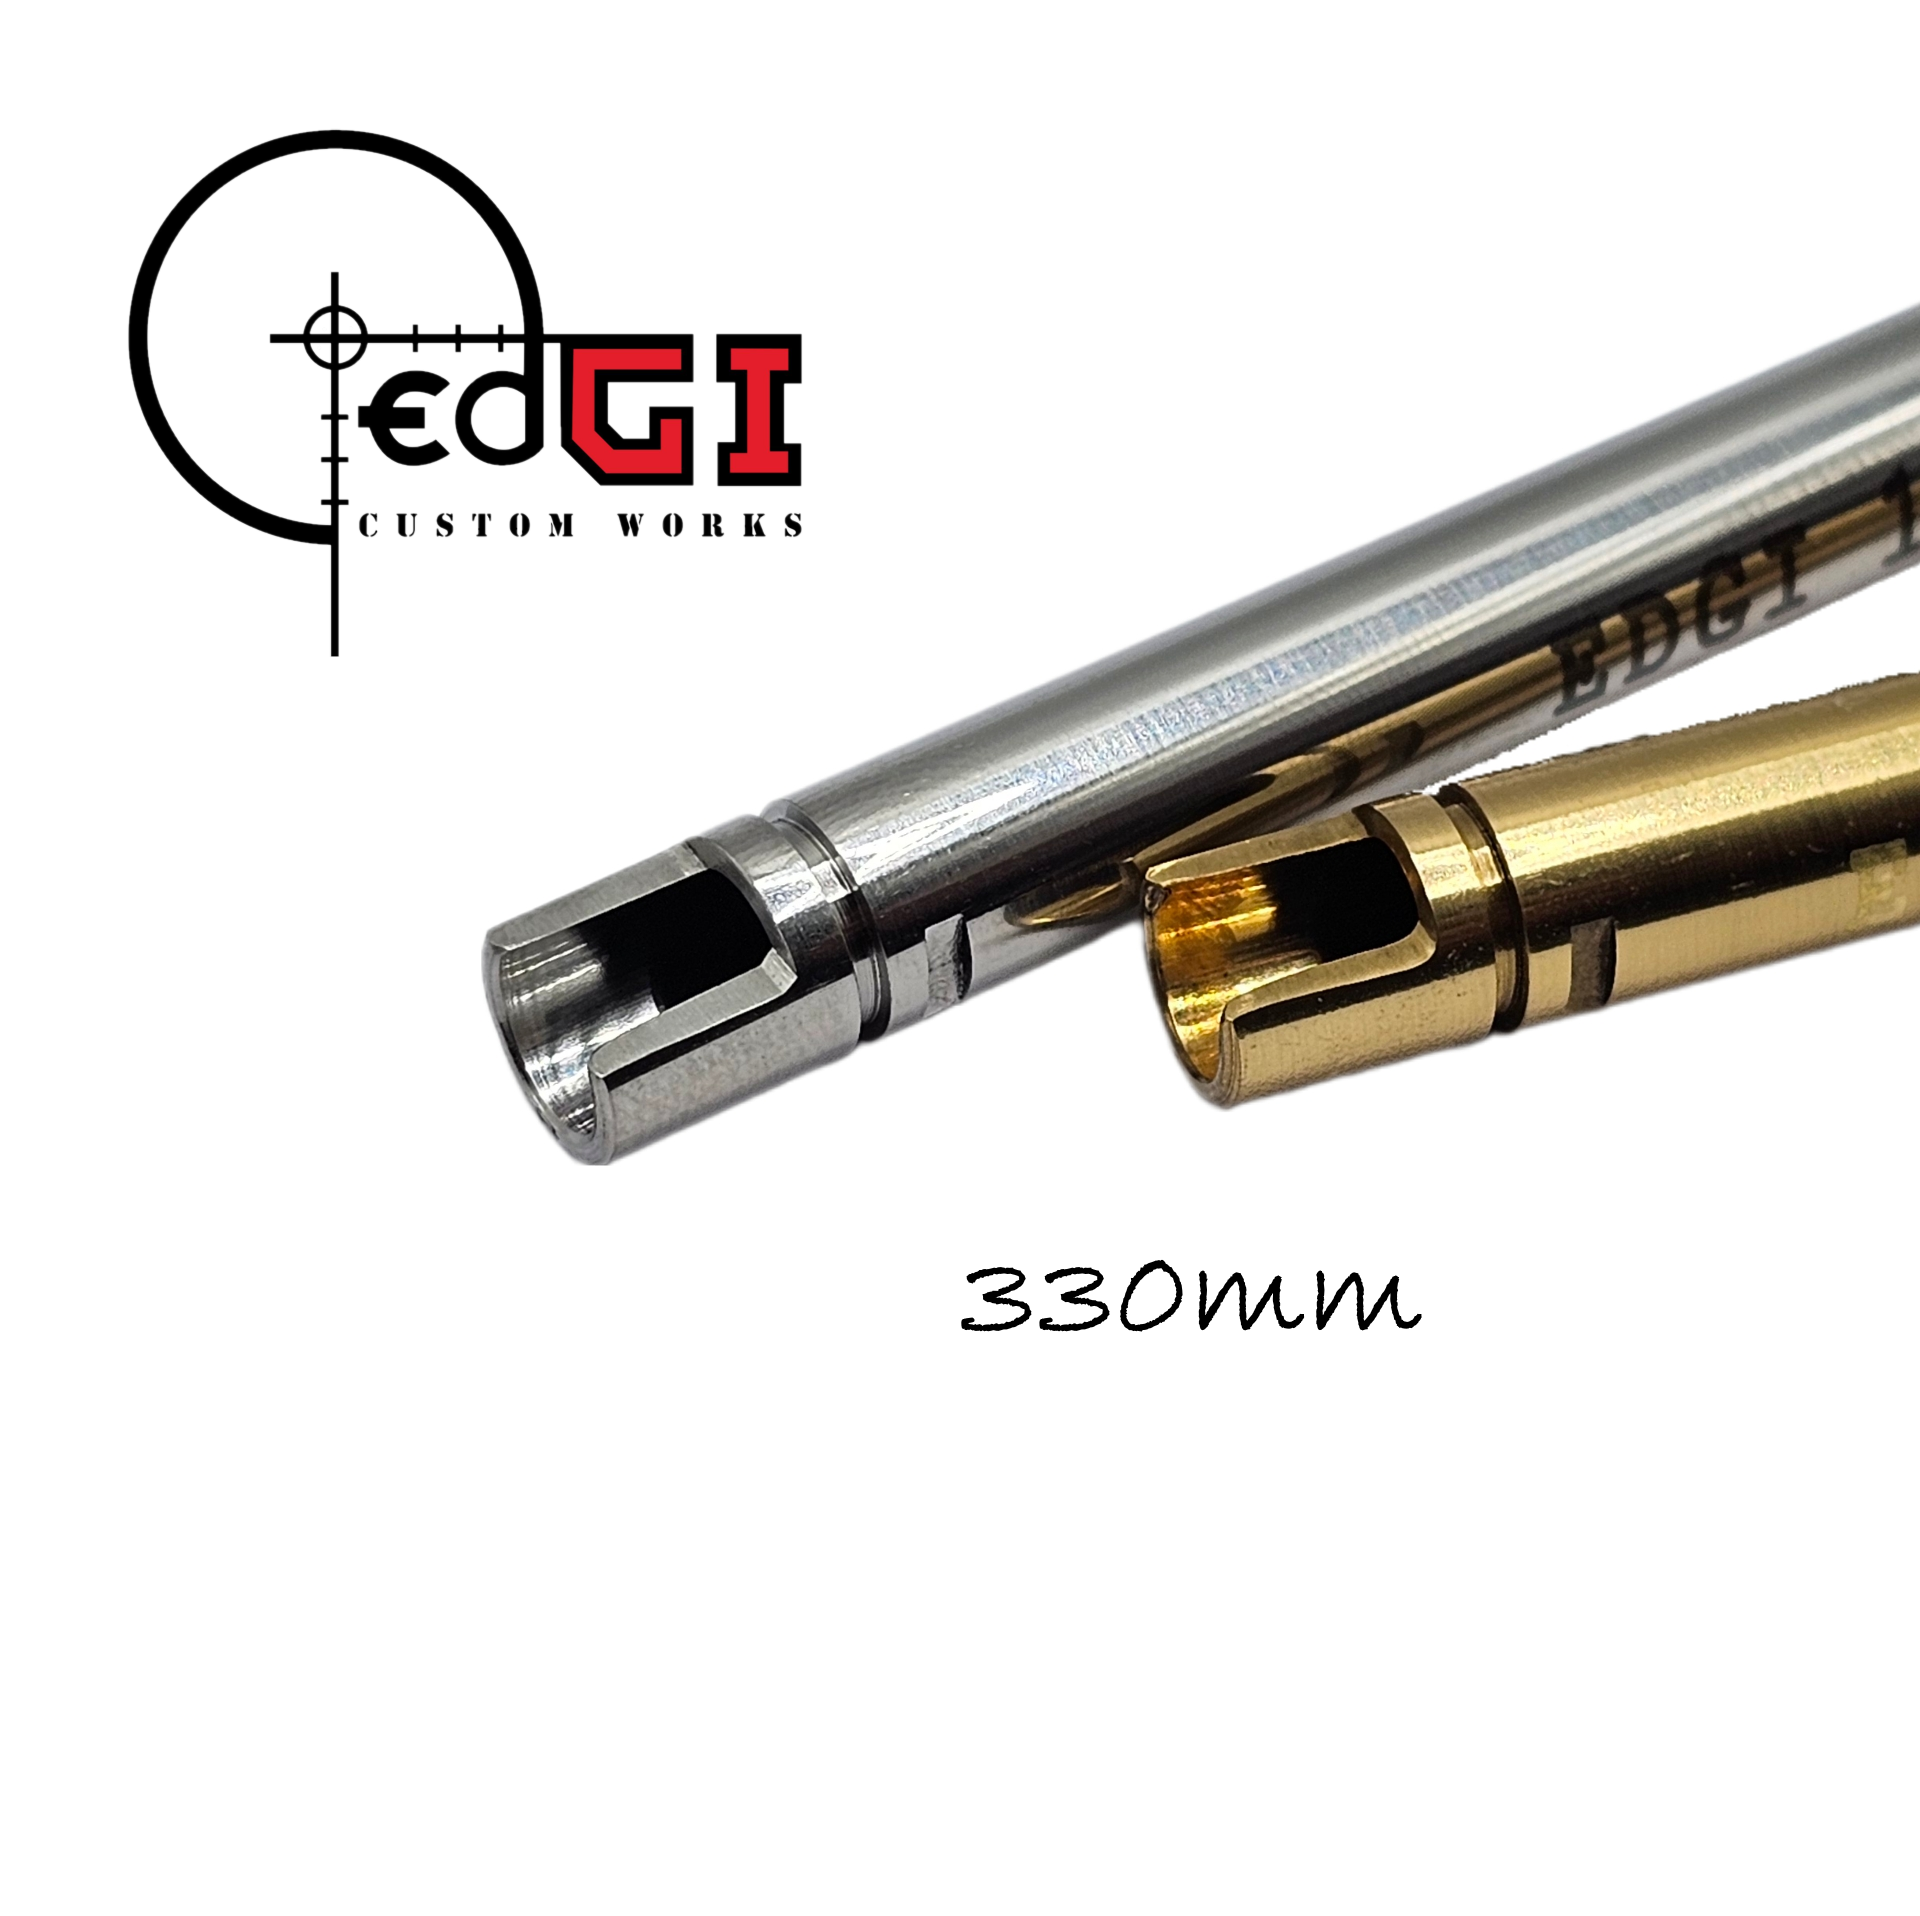 Edgi Custom Works - 330mm GBB Inner Barrel